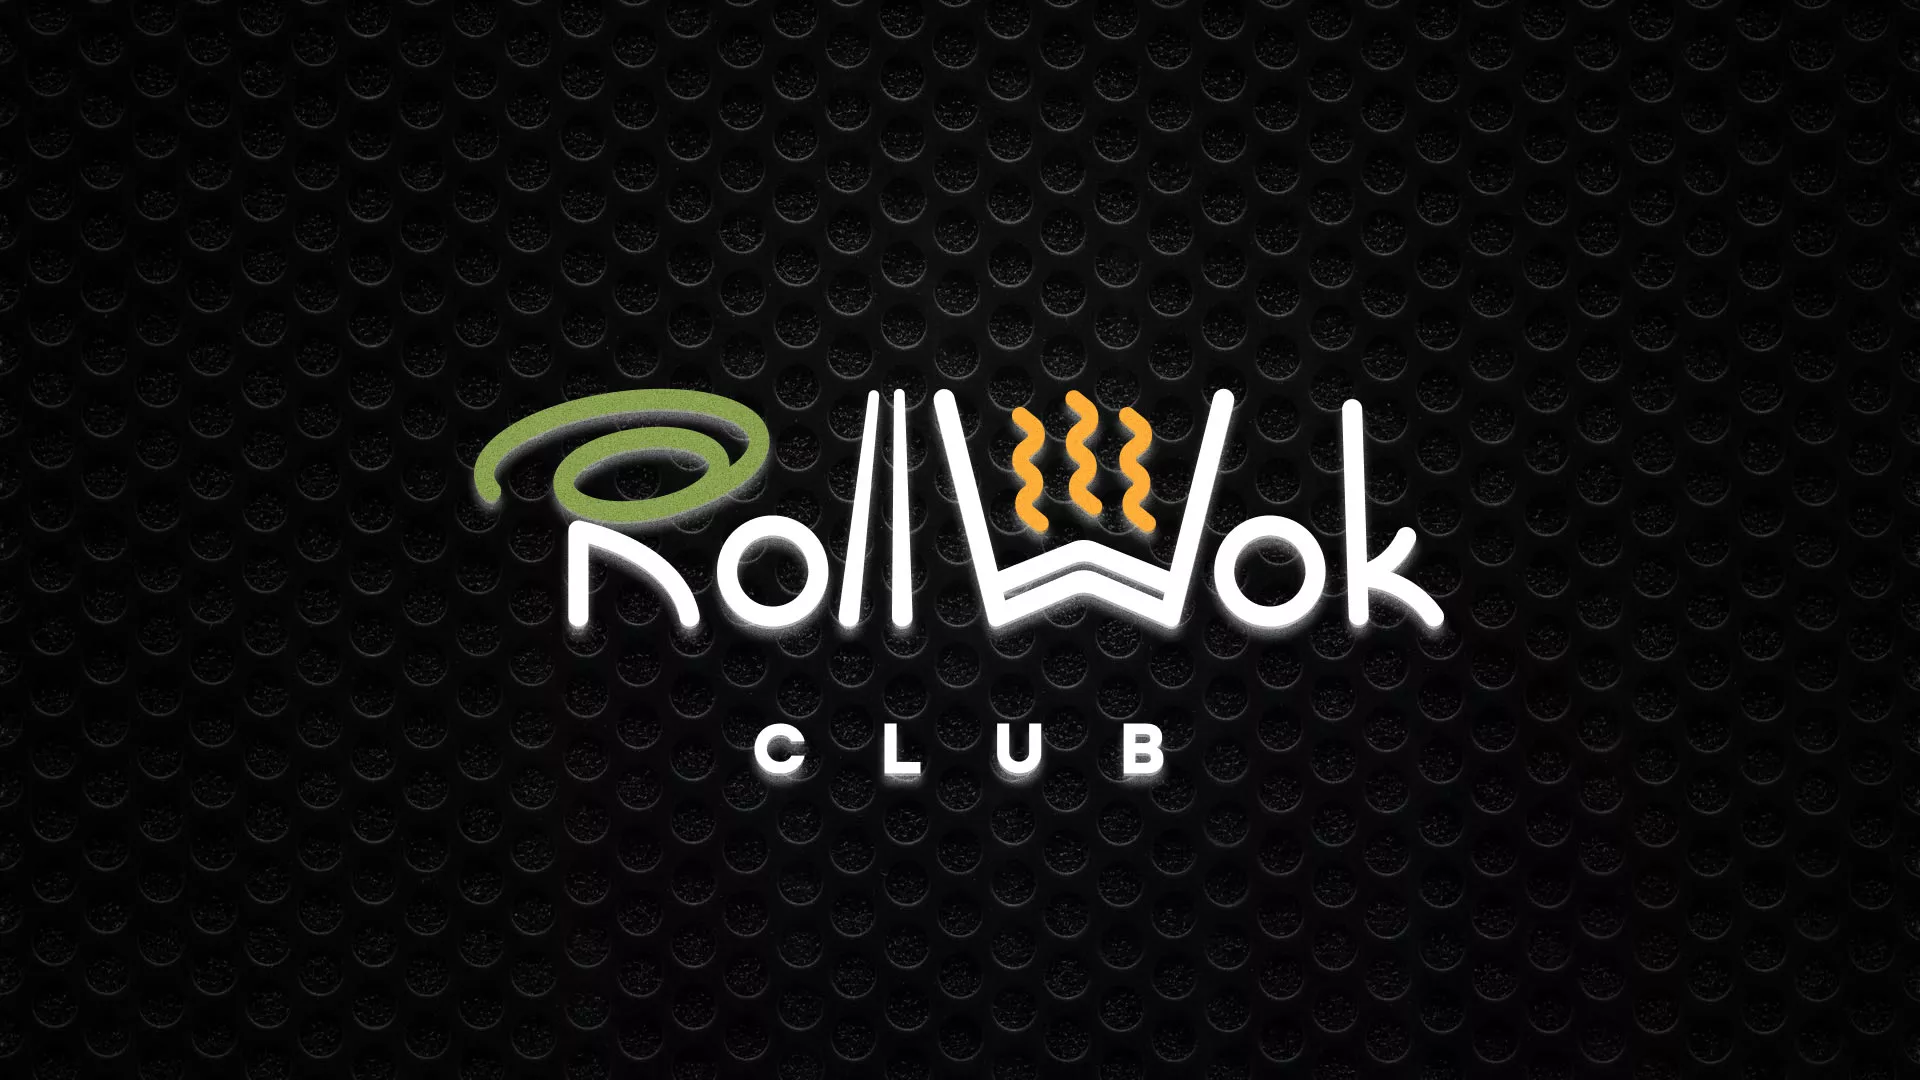 Брендирование торговых точек суши-бара «Roll Wok Club» в Козьмодемьянске